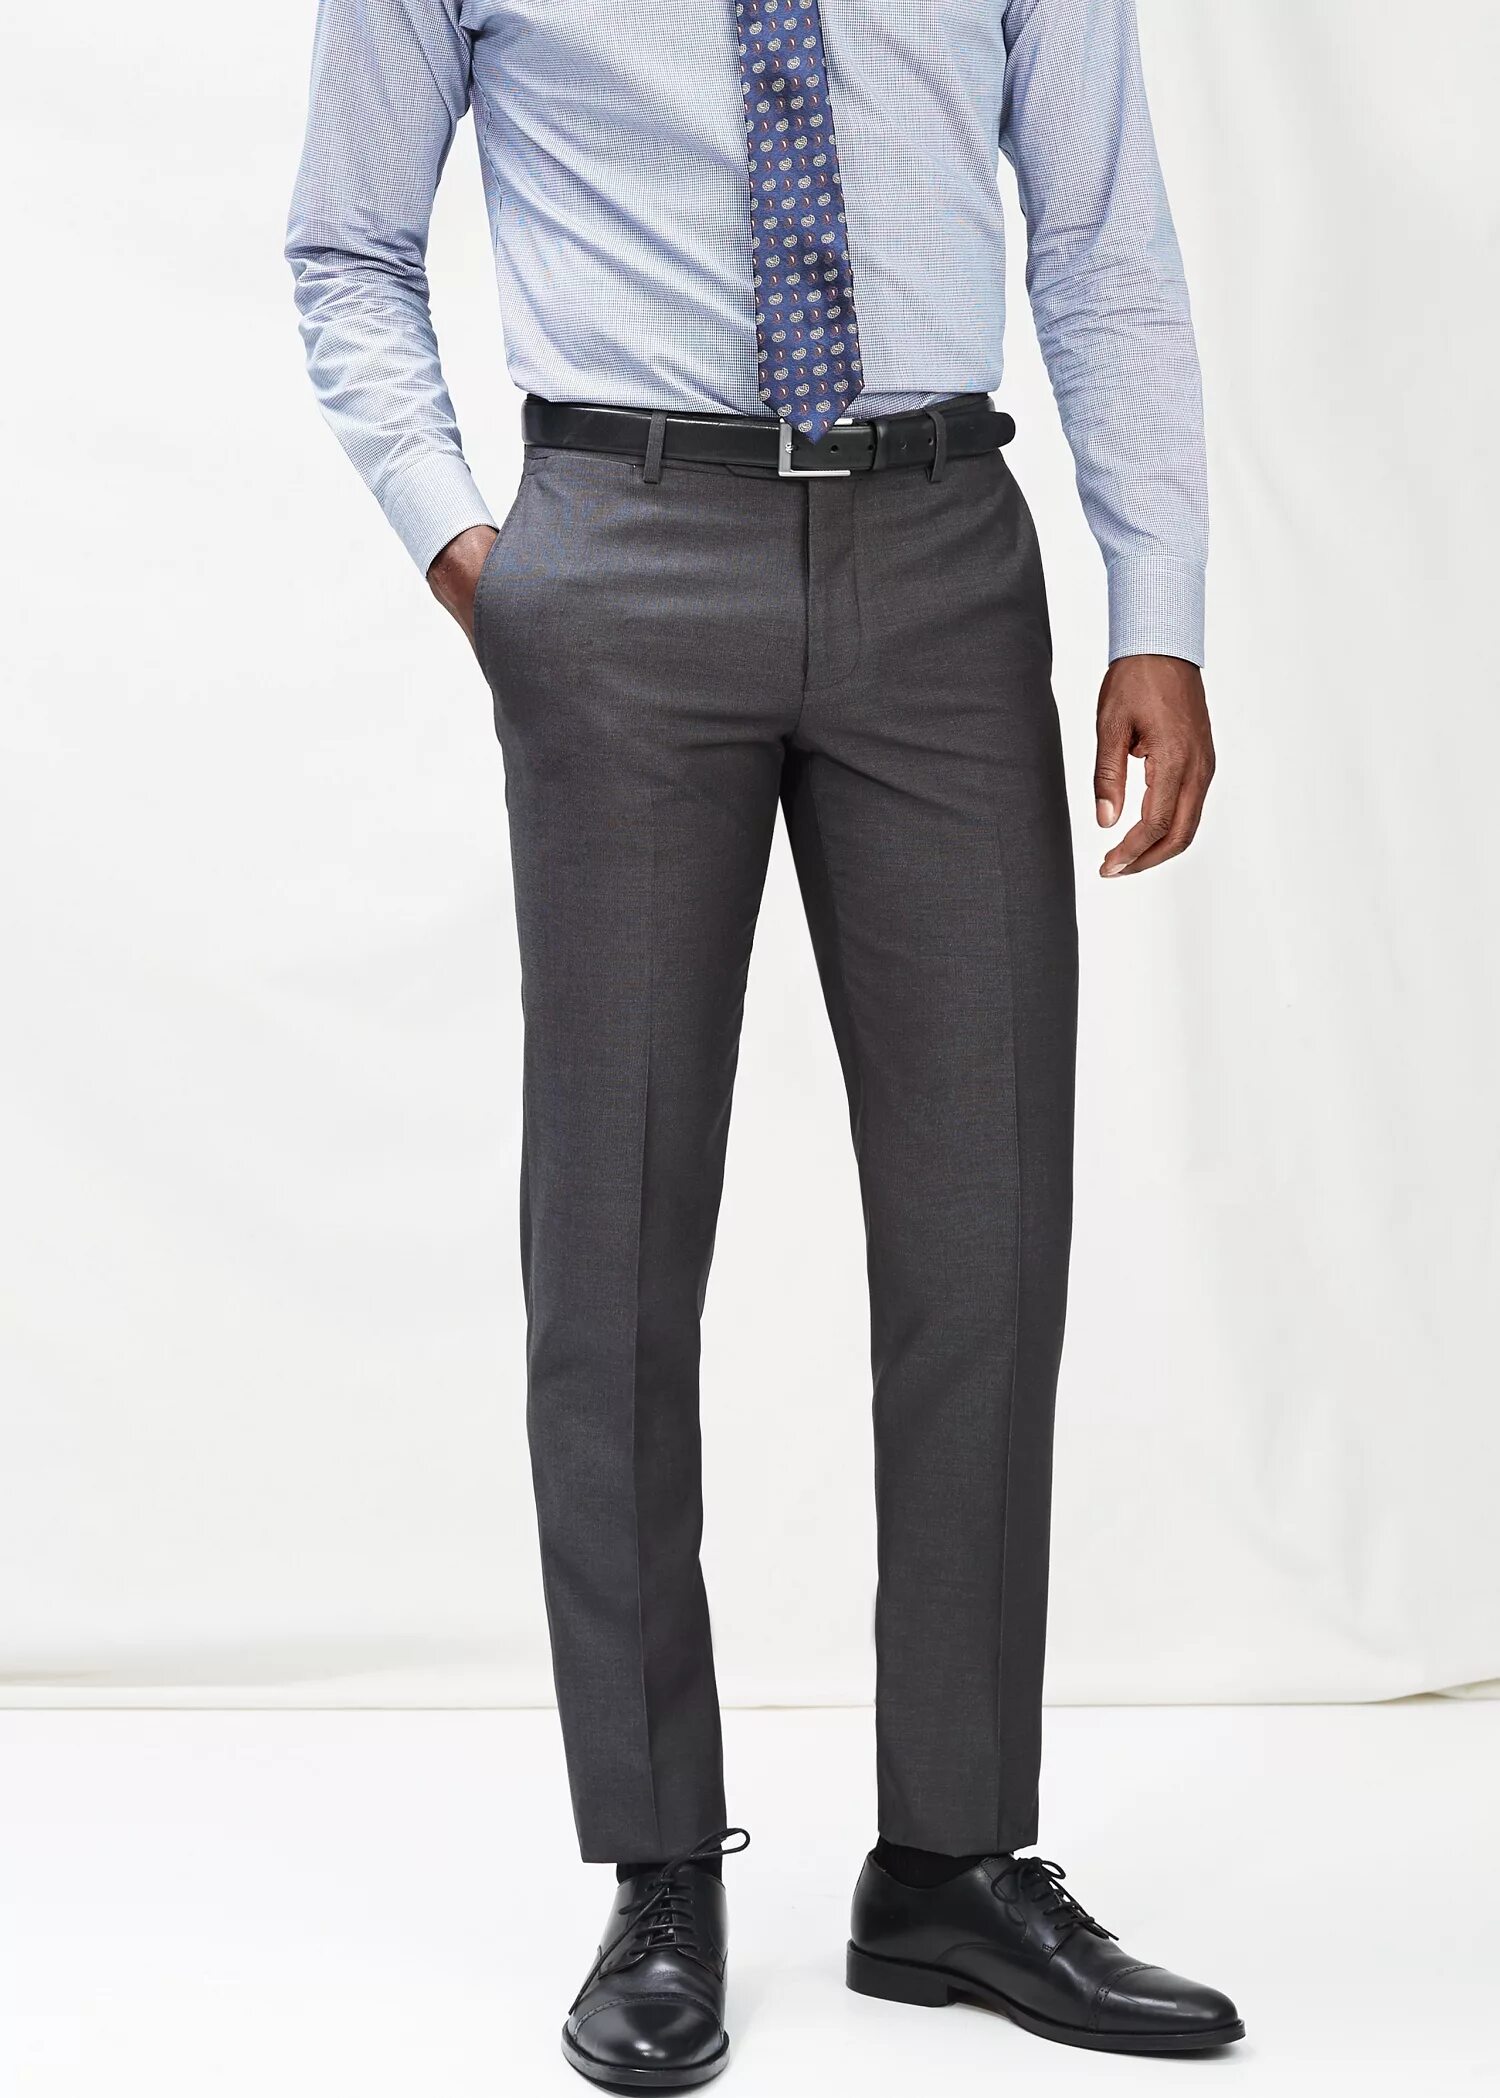 Какие есть брюки мужские. Mango брюки мужские 70503 tailored. Брюки слим фит мужские. Mango Suit брюки мужские. Костюмные брюки мужские классические.